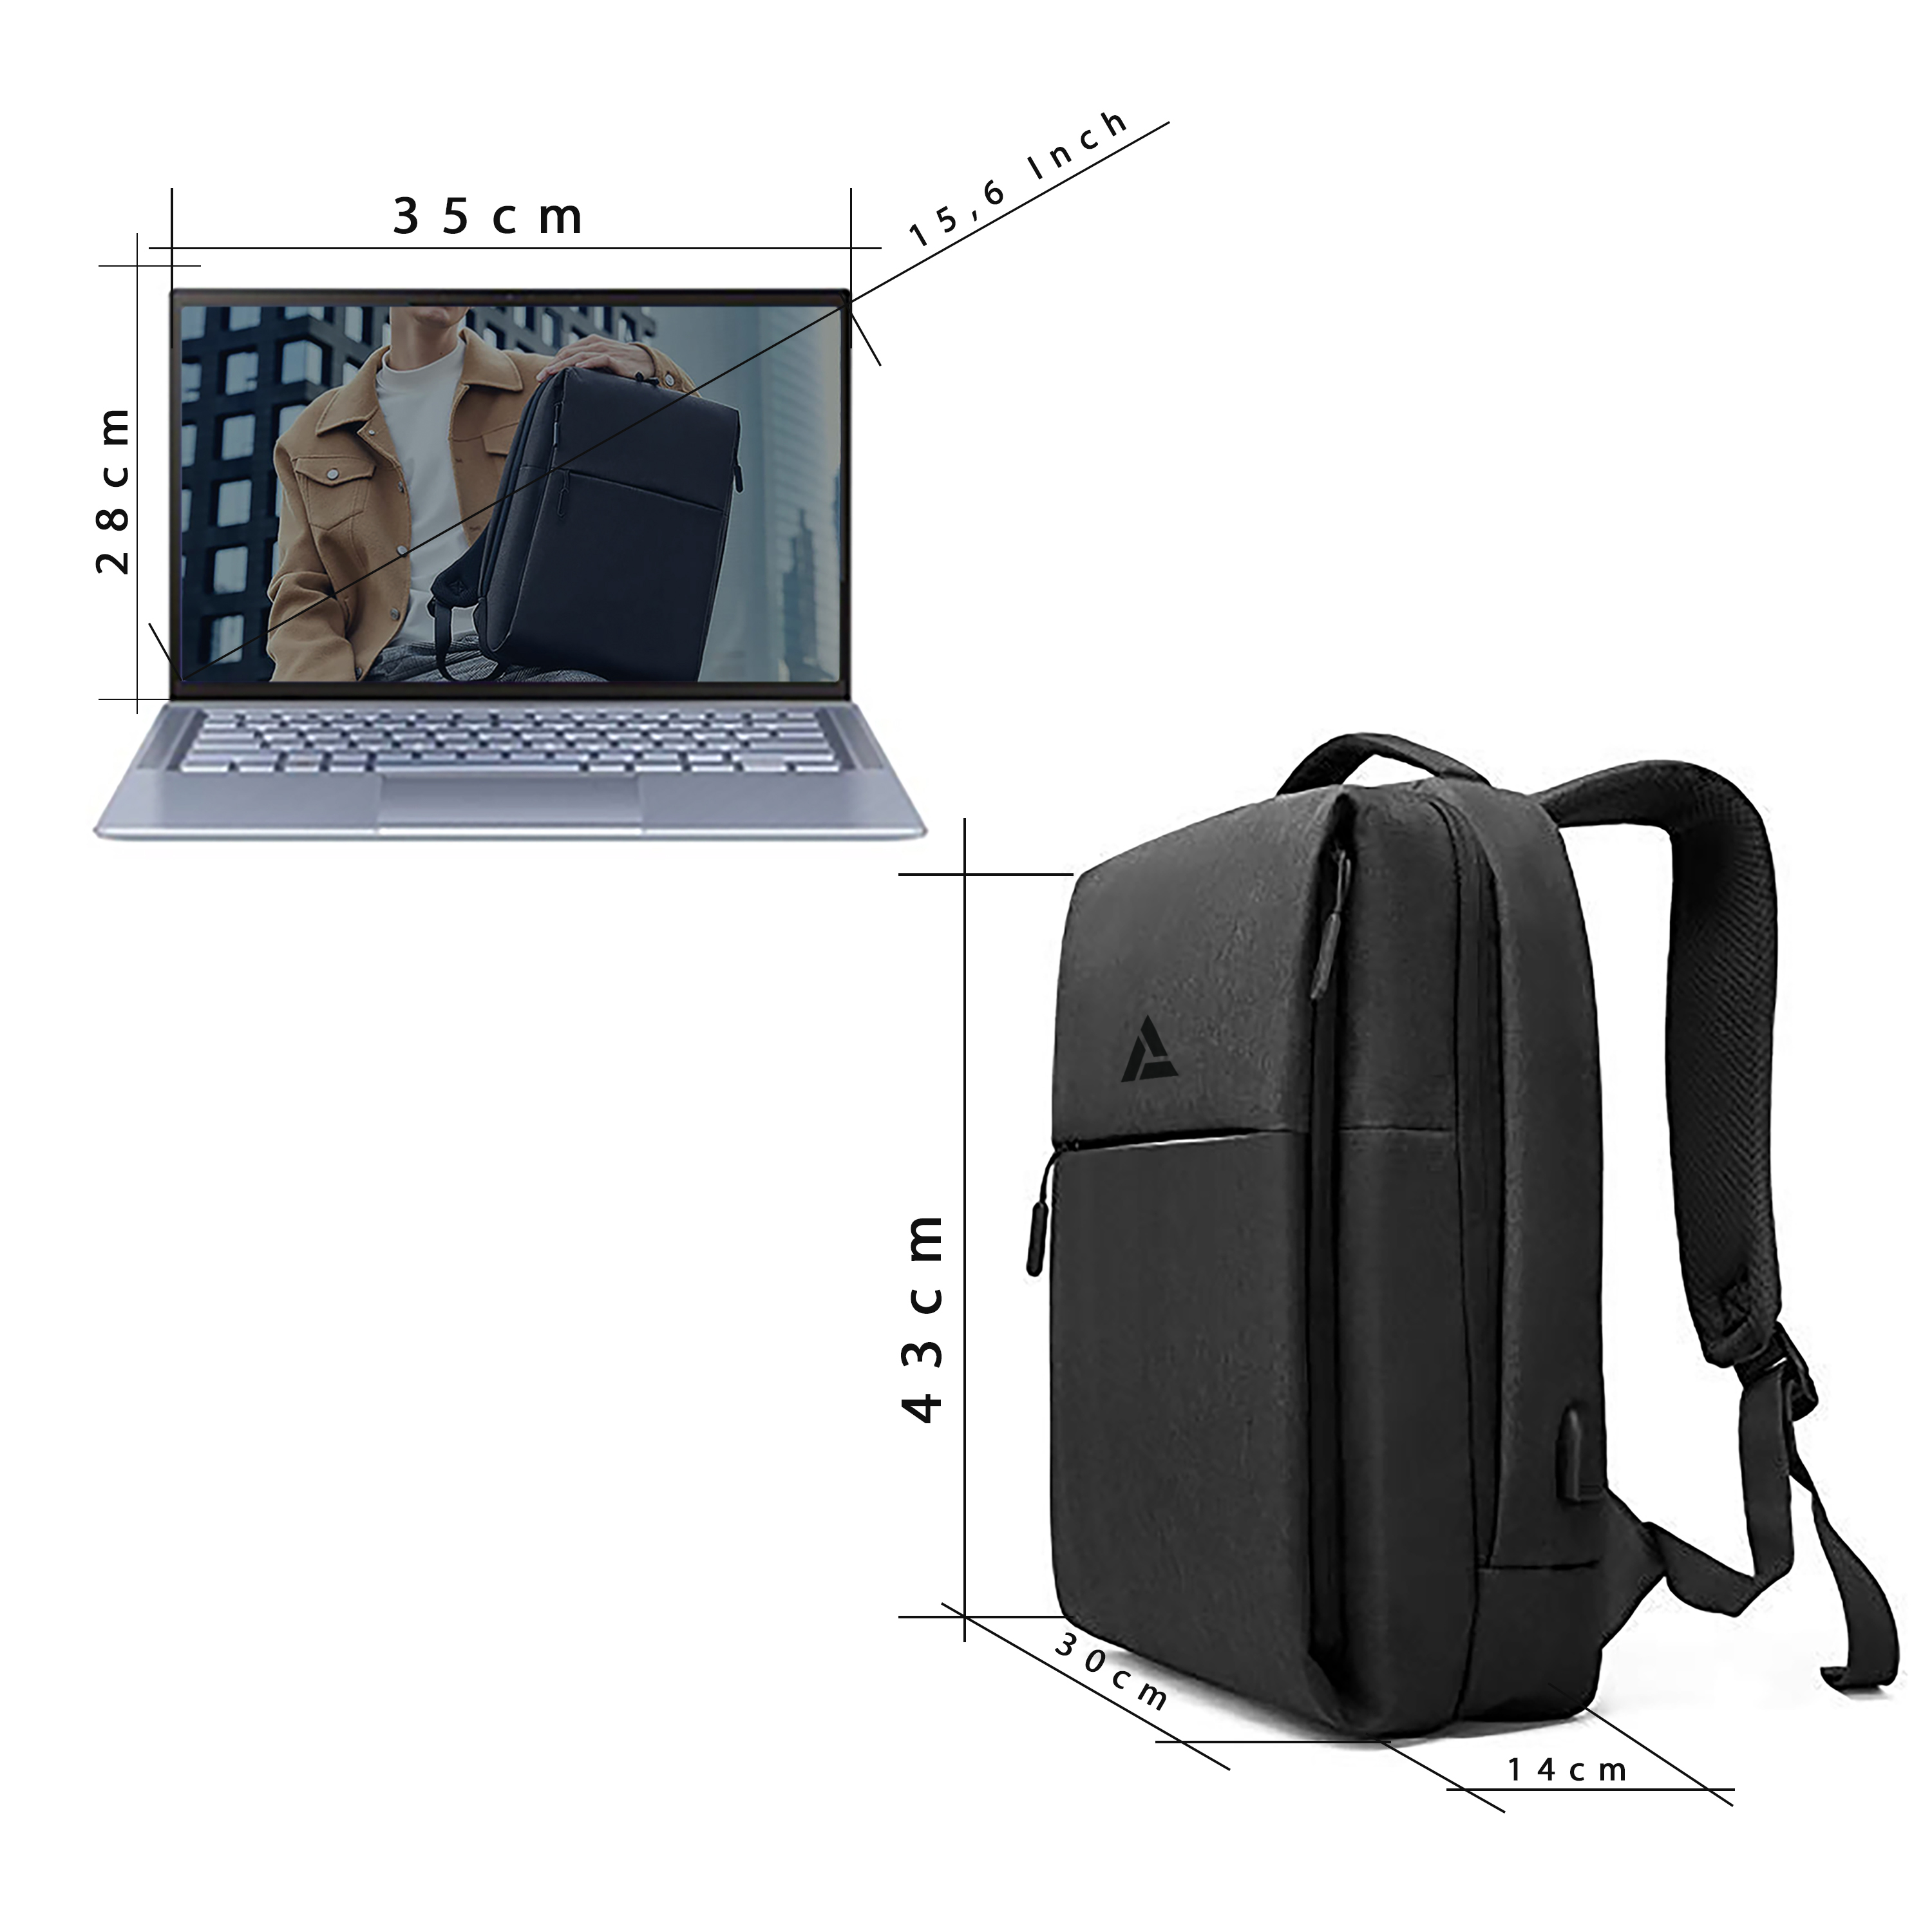 Herren Rucksack Schulrucksack Laptop Arbeit Reise Schule Backpack Mit USB Port A 